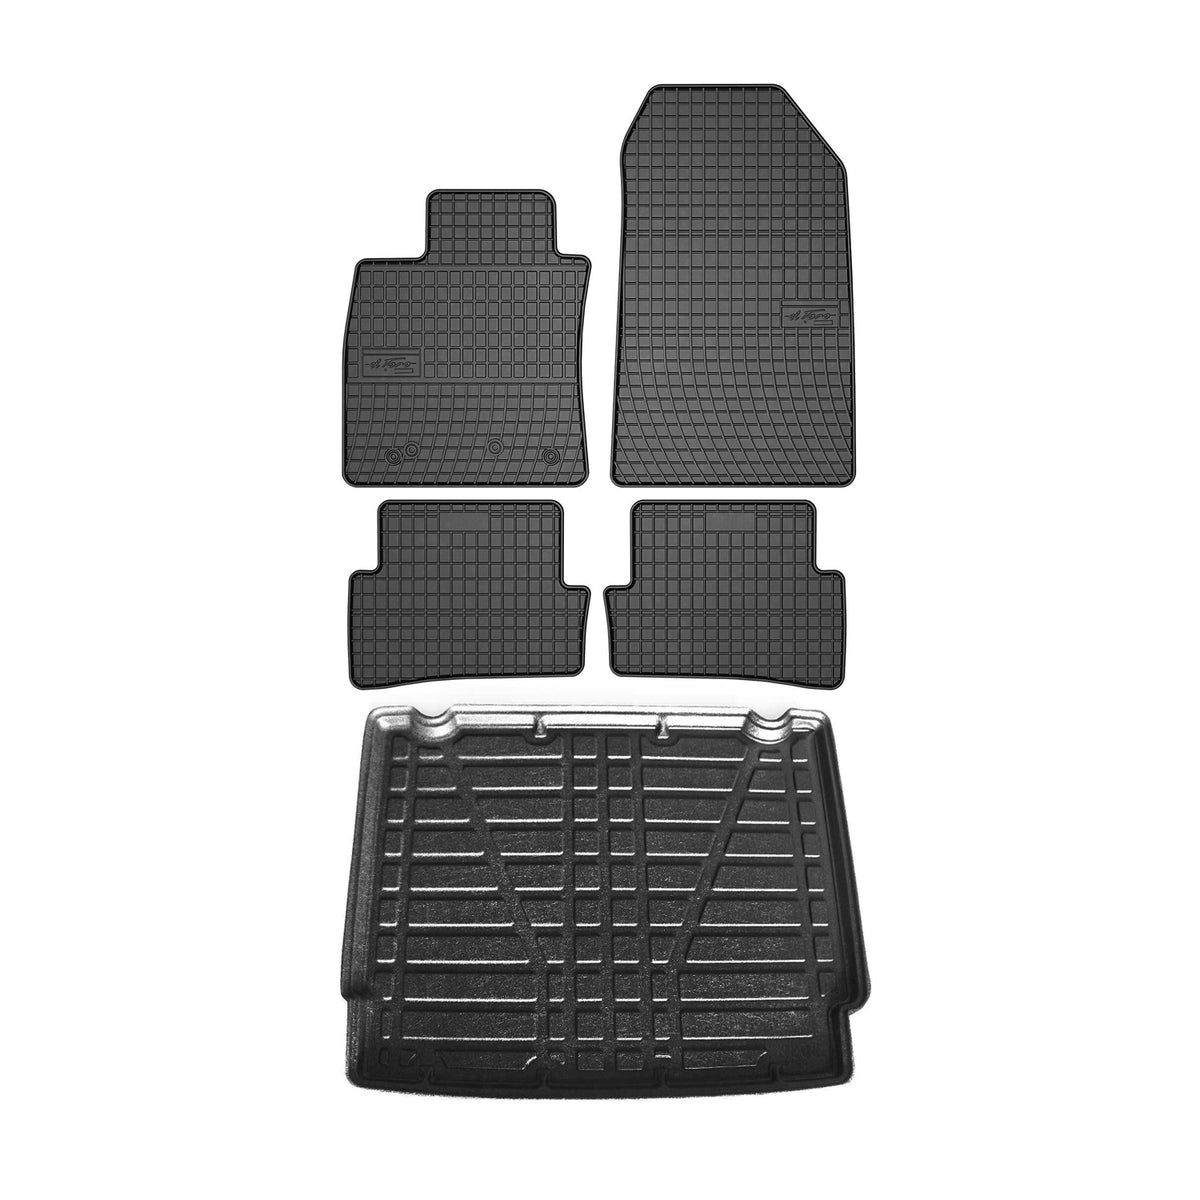 Fußmatten & Kofferraumwanne Set für Renault Clio Kombi 2012-2018 Obere Gummi 5x